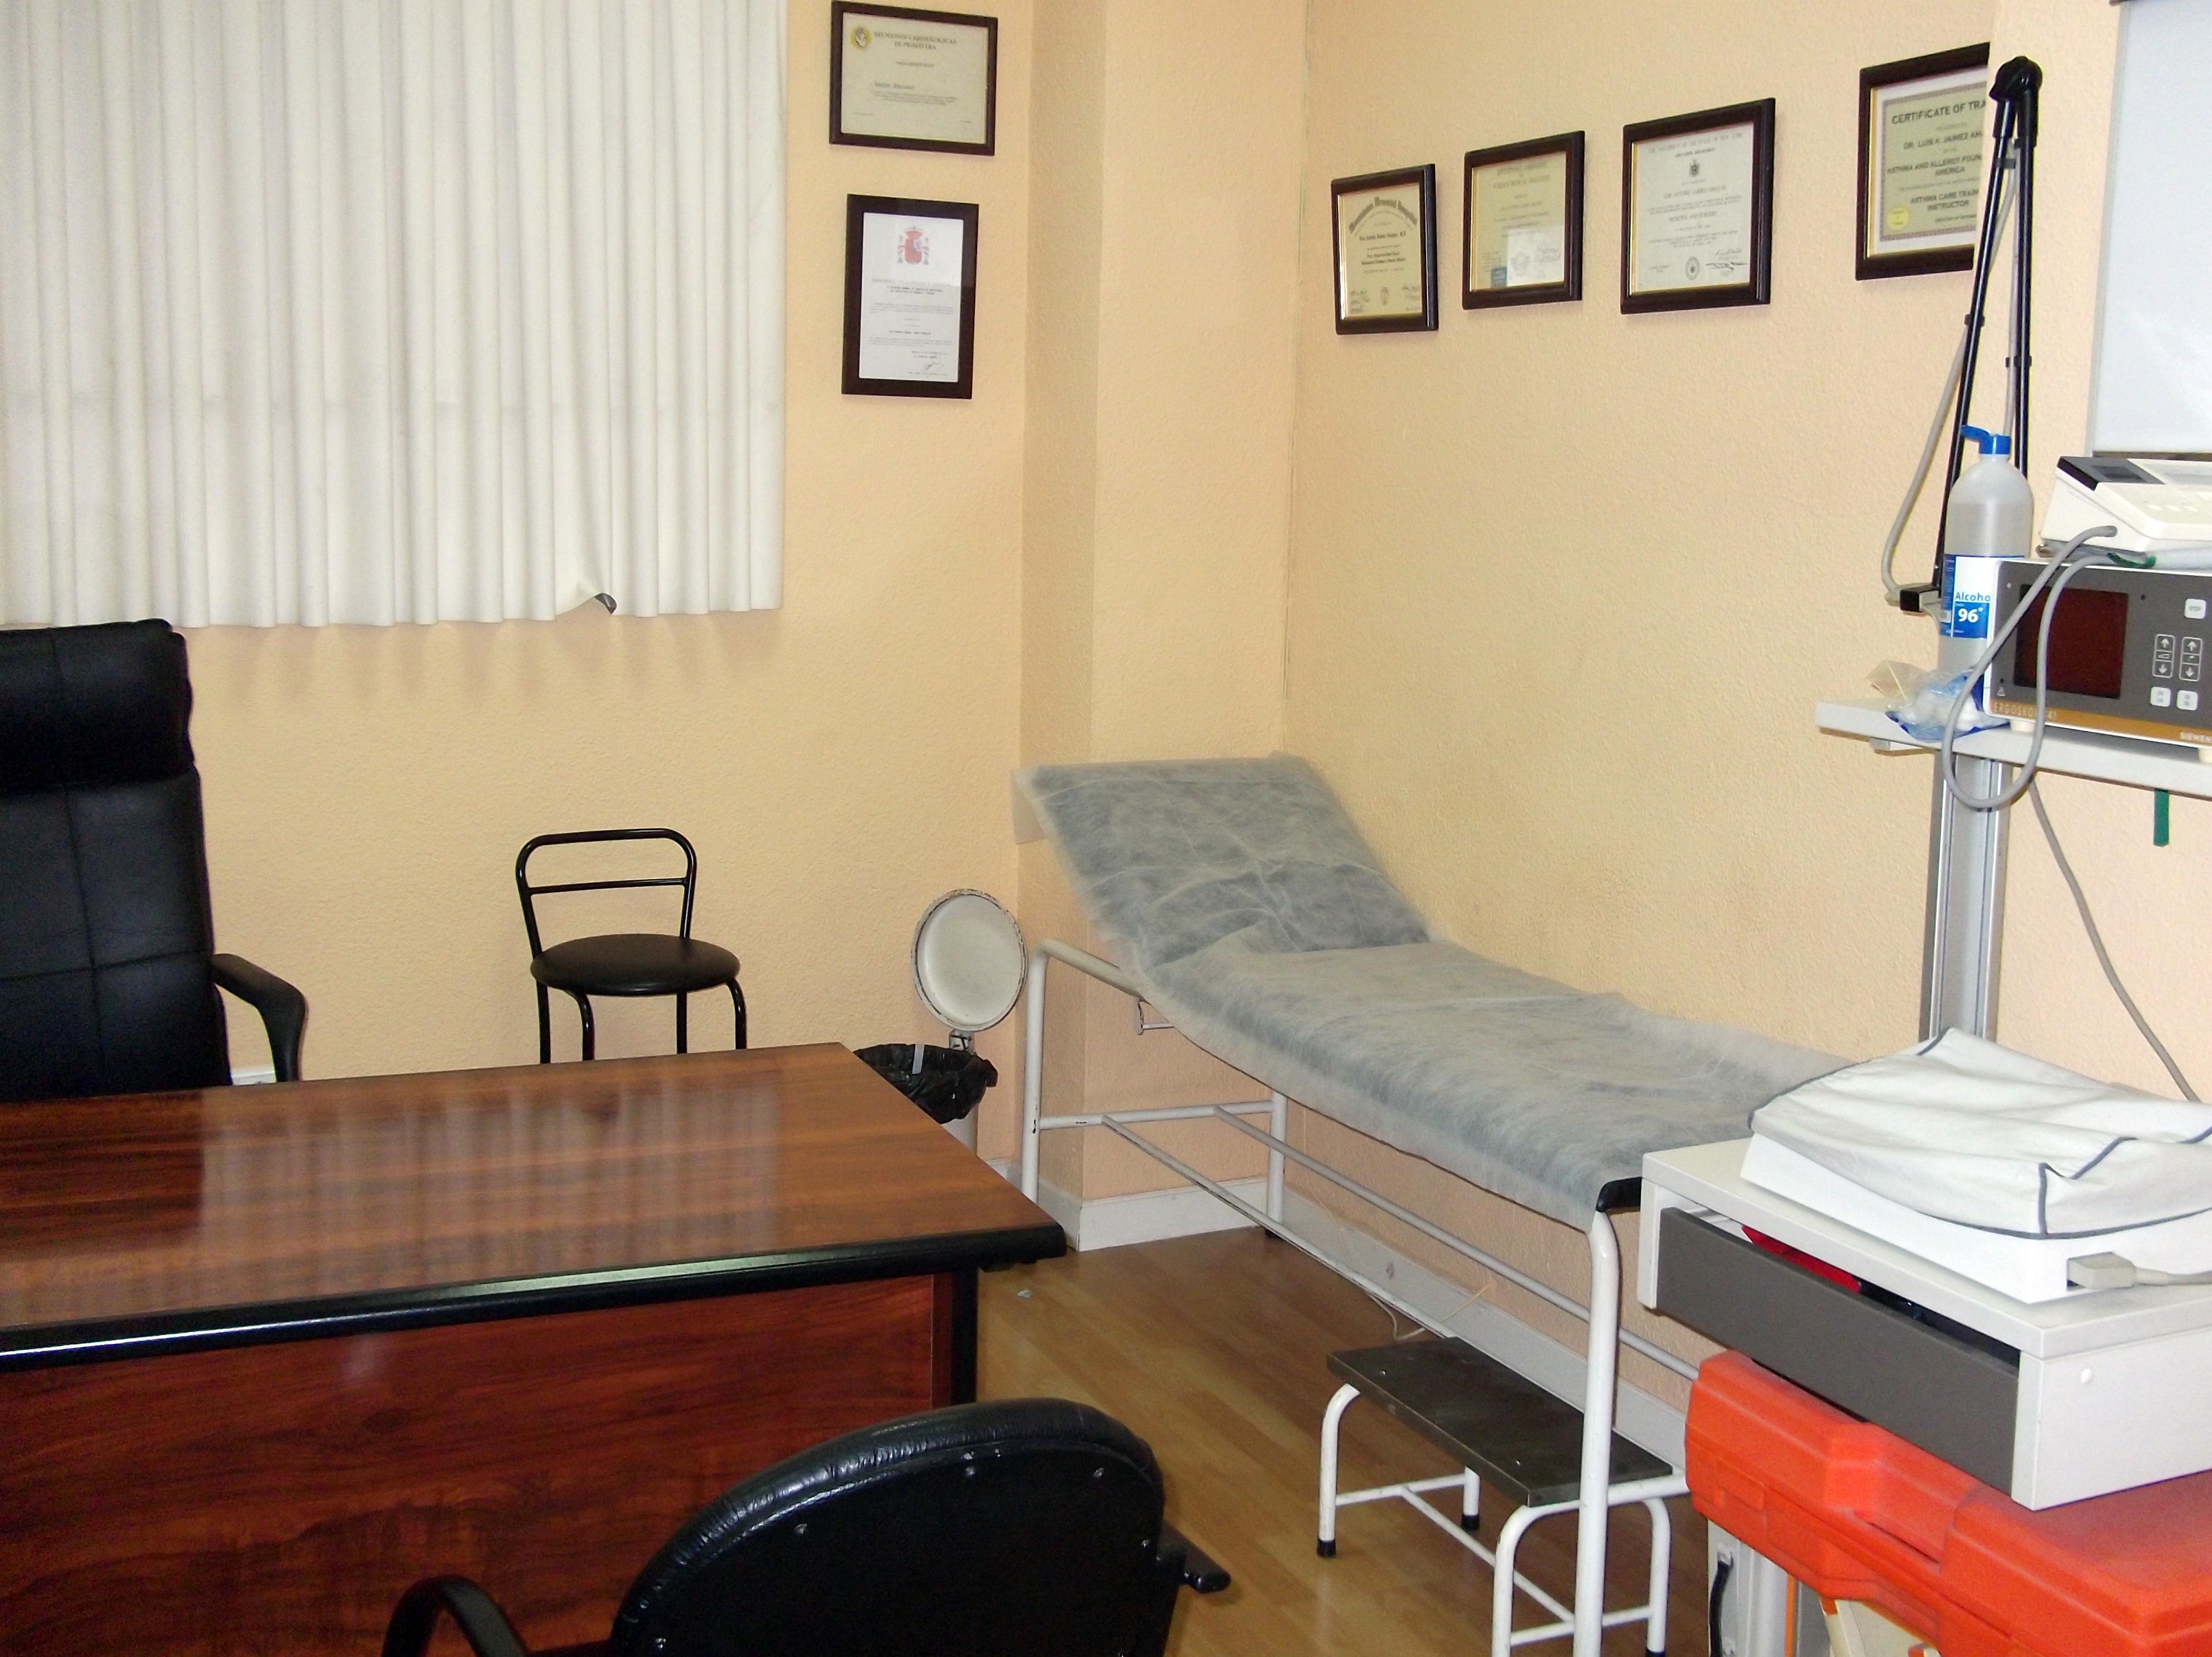 Foto 1 de Reconocimientos y certificados médicos en Úbeda | Centro Médico De Reconocimiento CMR